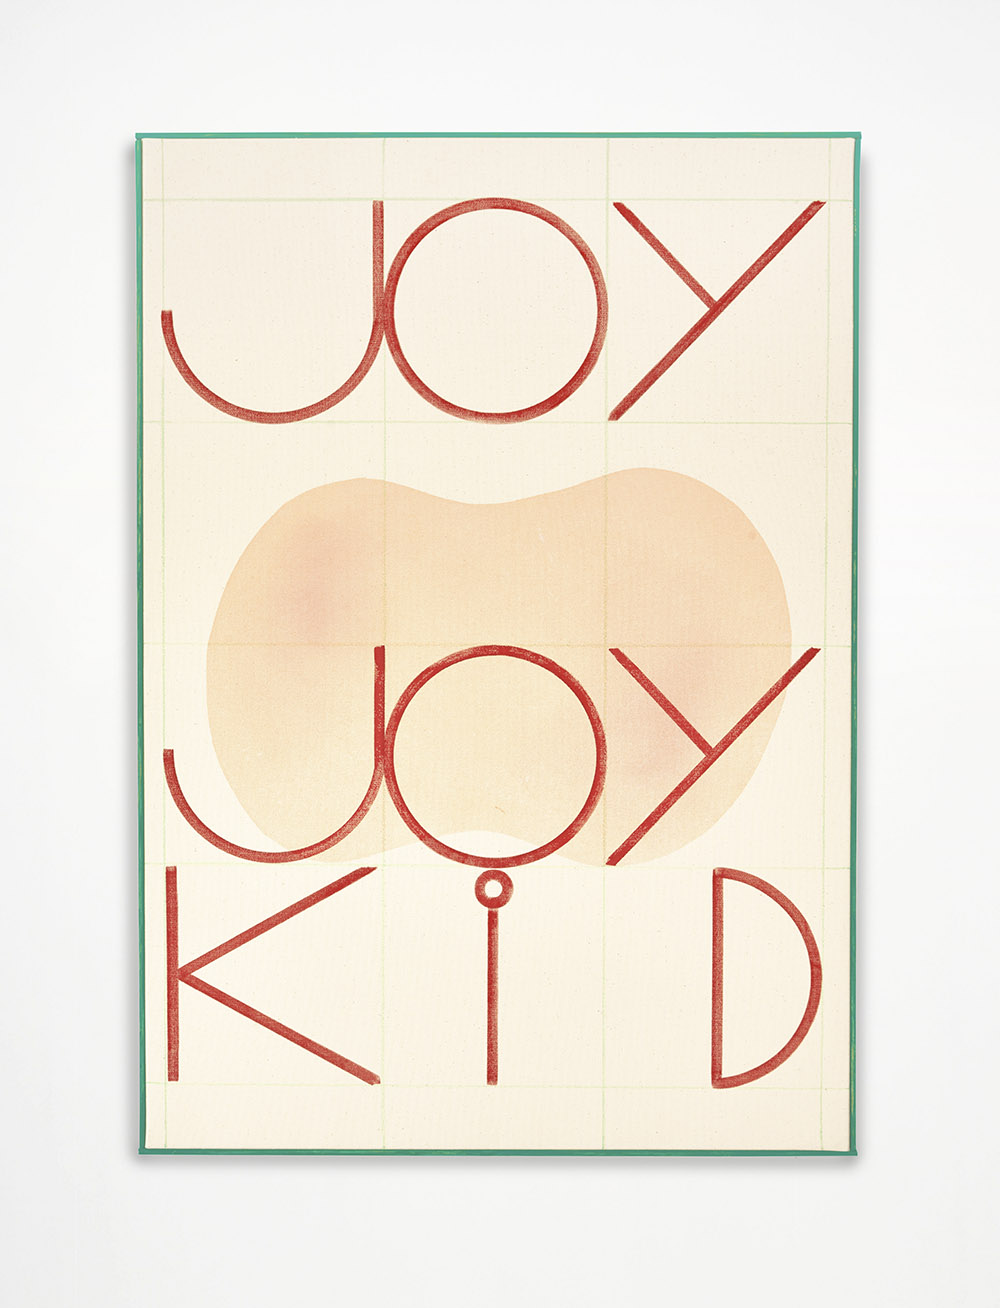 joy_joy_kid